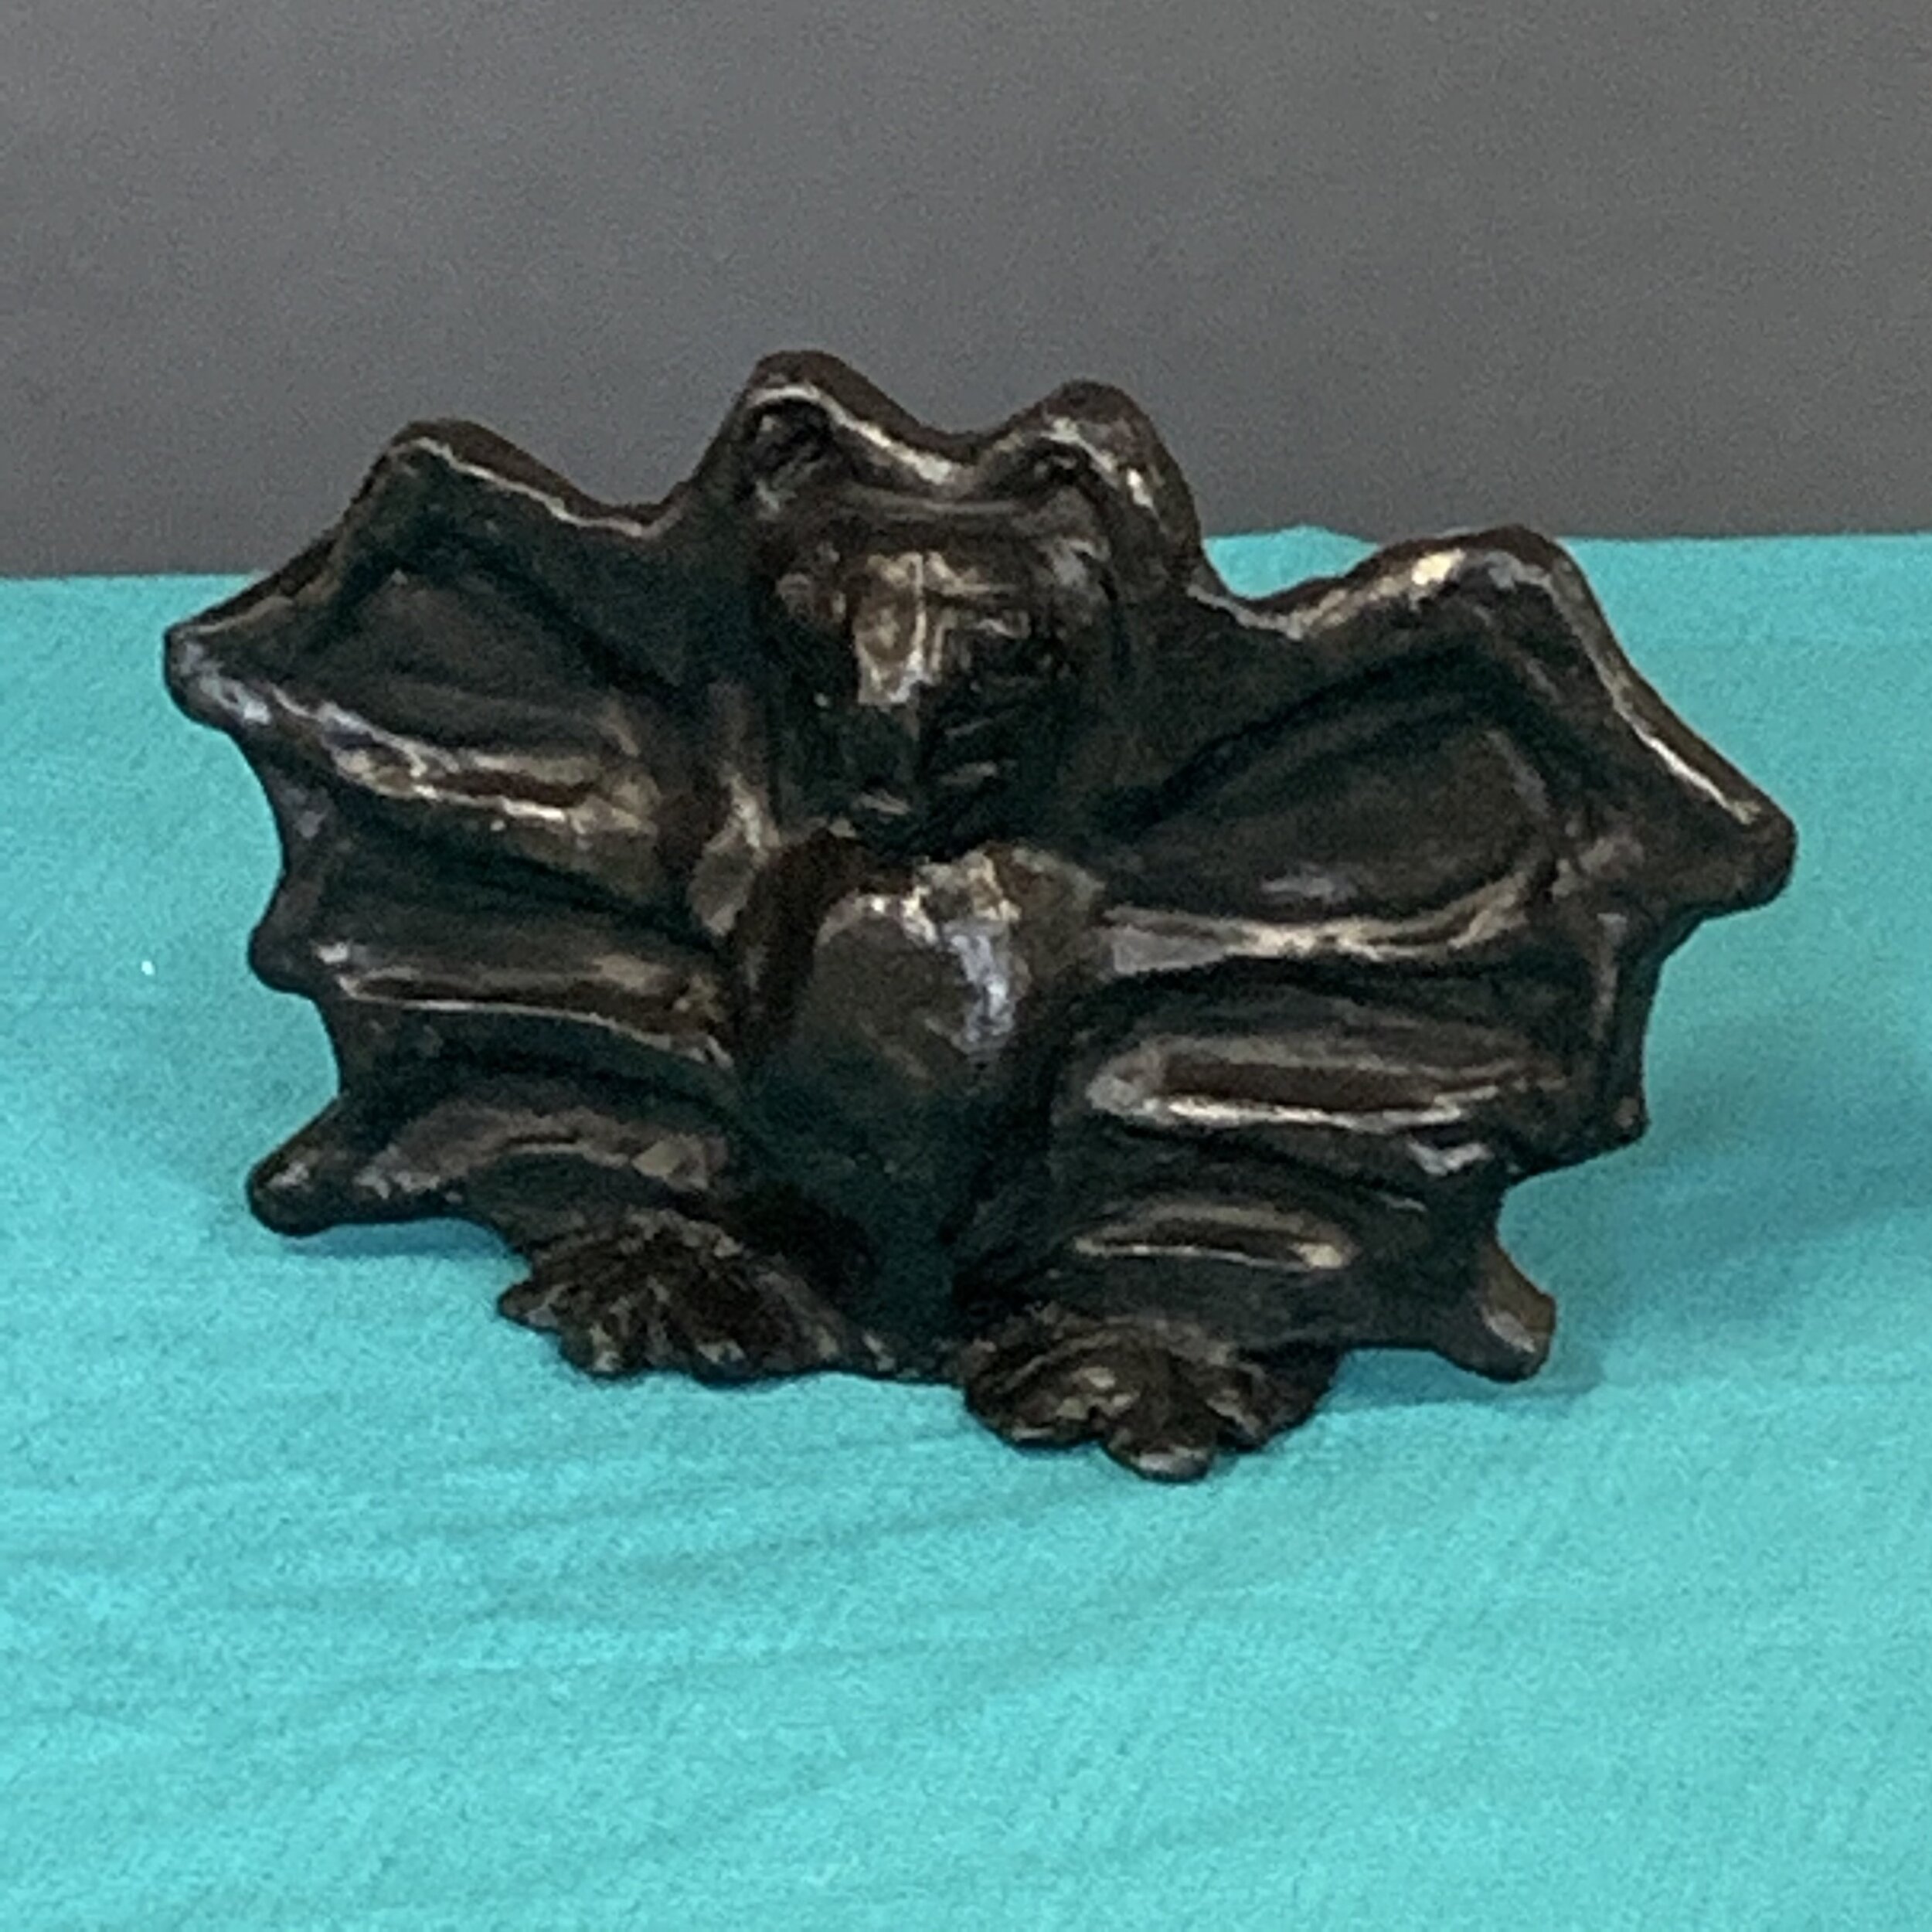   Bat, Spirit Animal Series  Clay with glaze 4 x 6 x 1.5 in/ 10 x 15.2 x 3.8 cm. 2020 